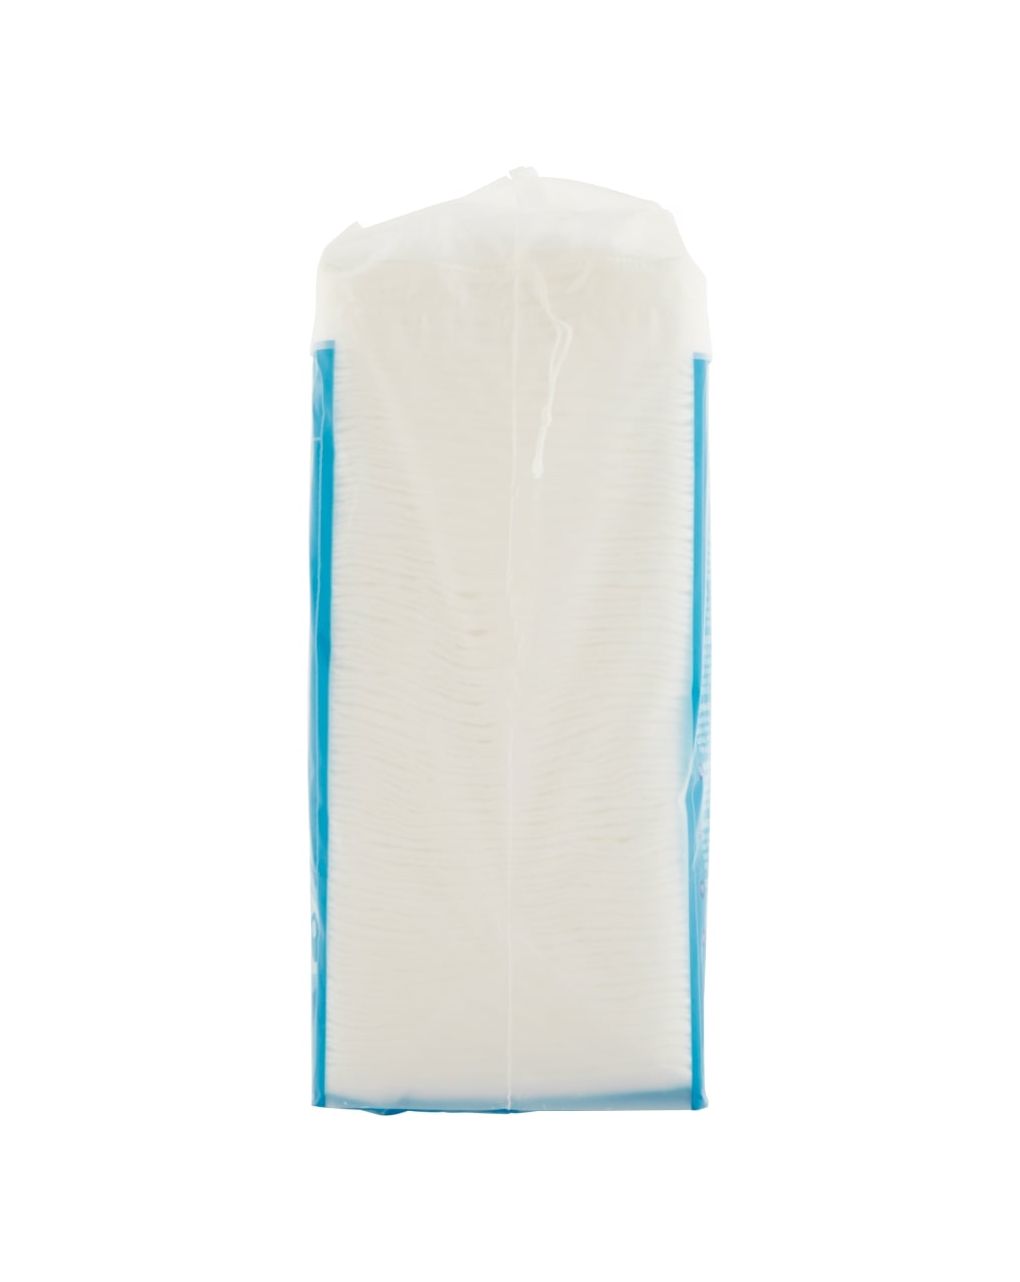 Maxicuadrados higiénicos 100 % algodón para bebés - 50 uds. - Neo Baby